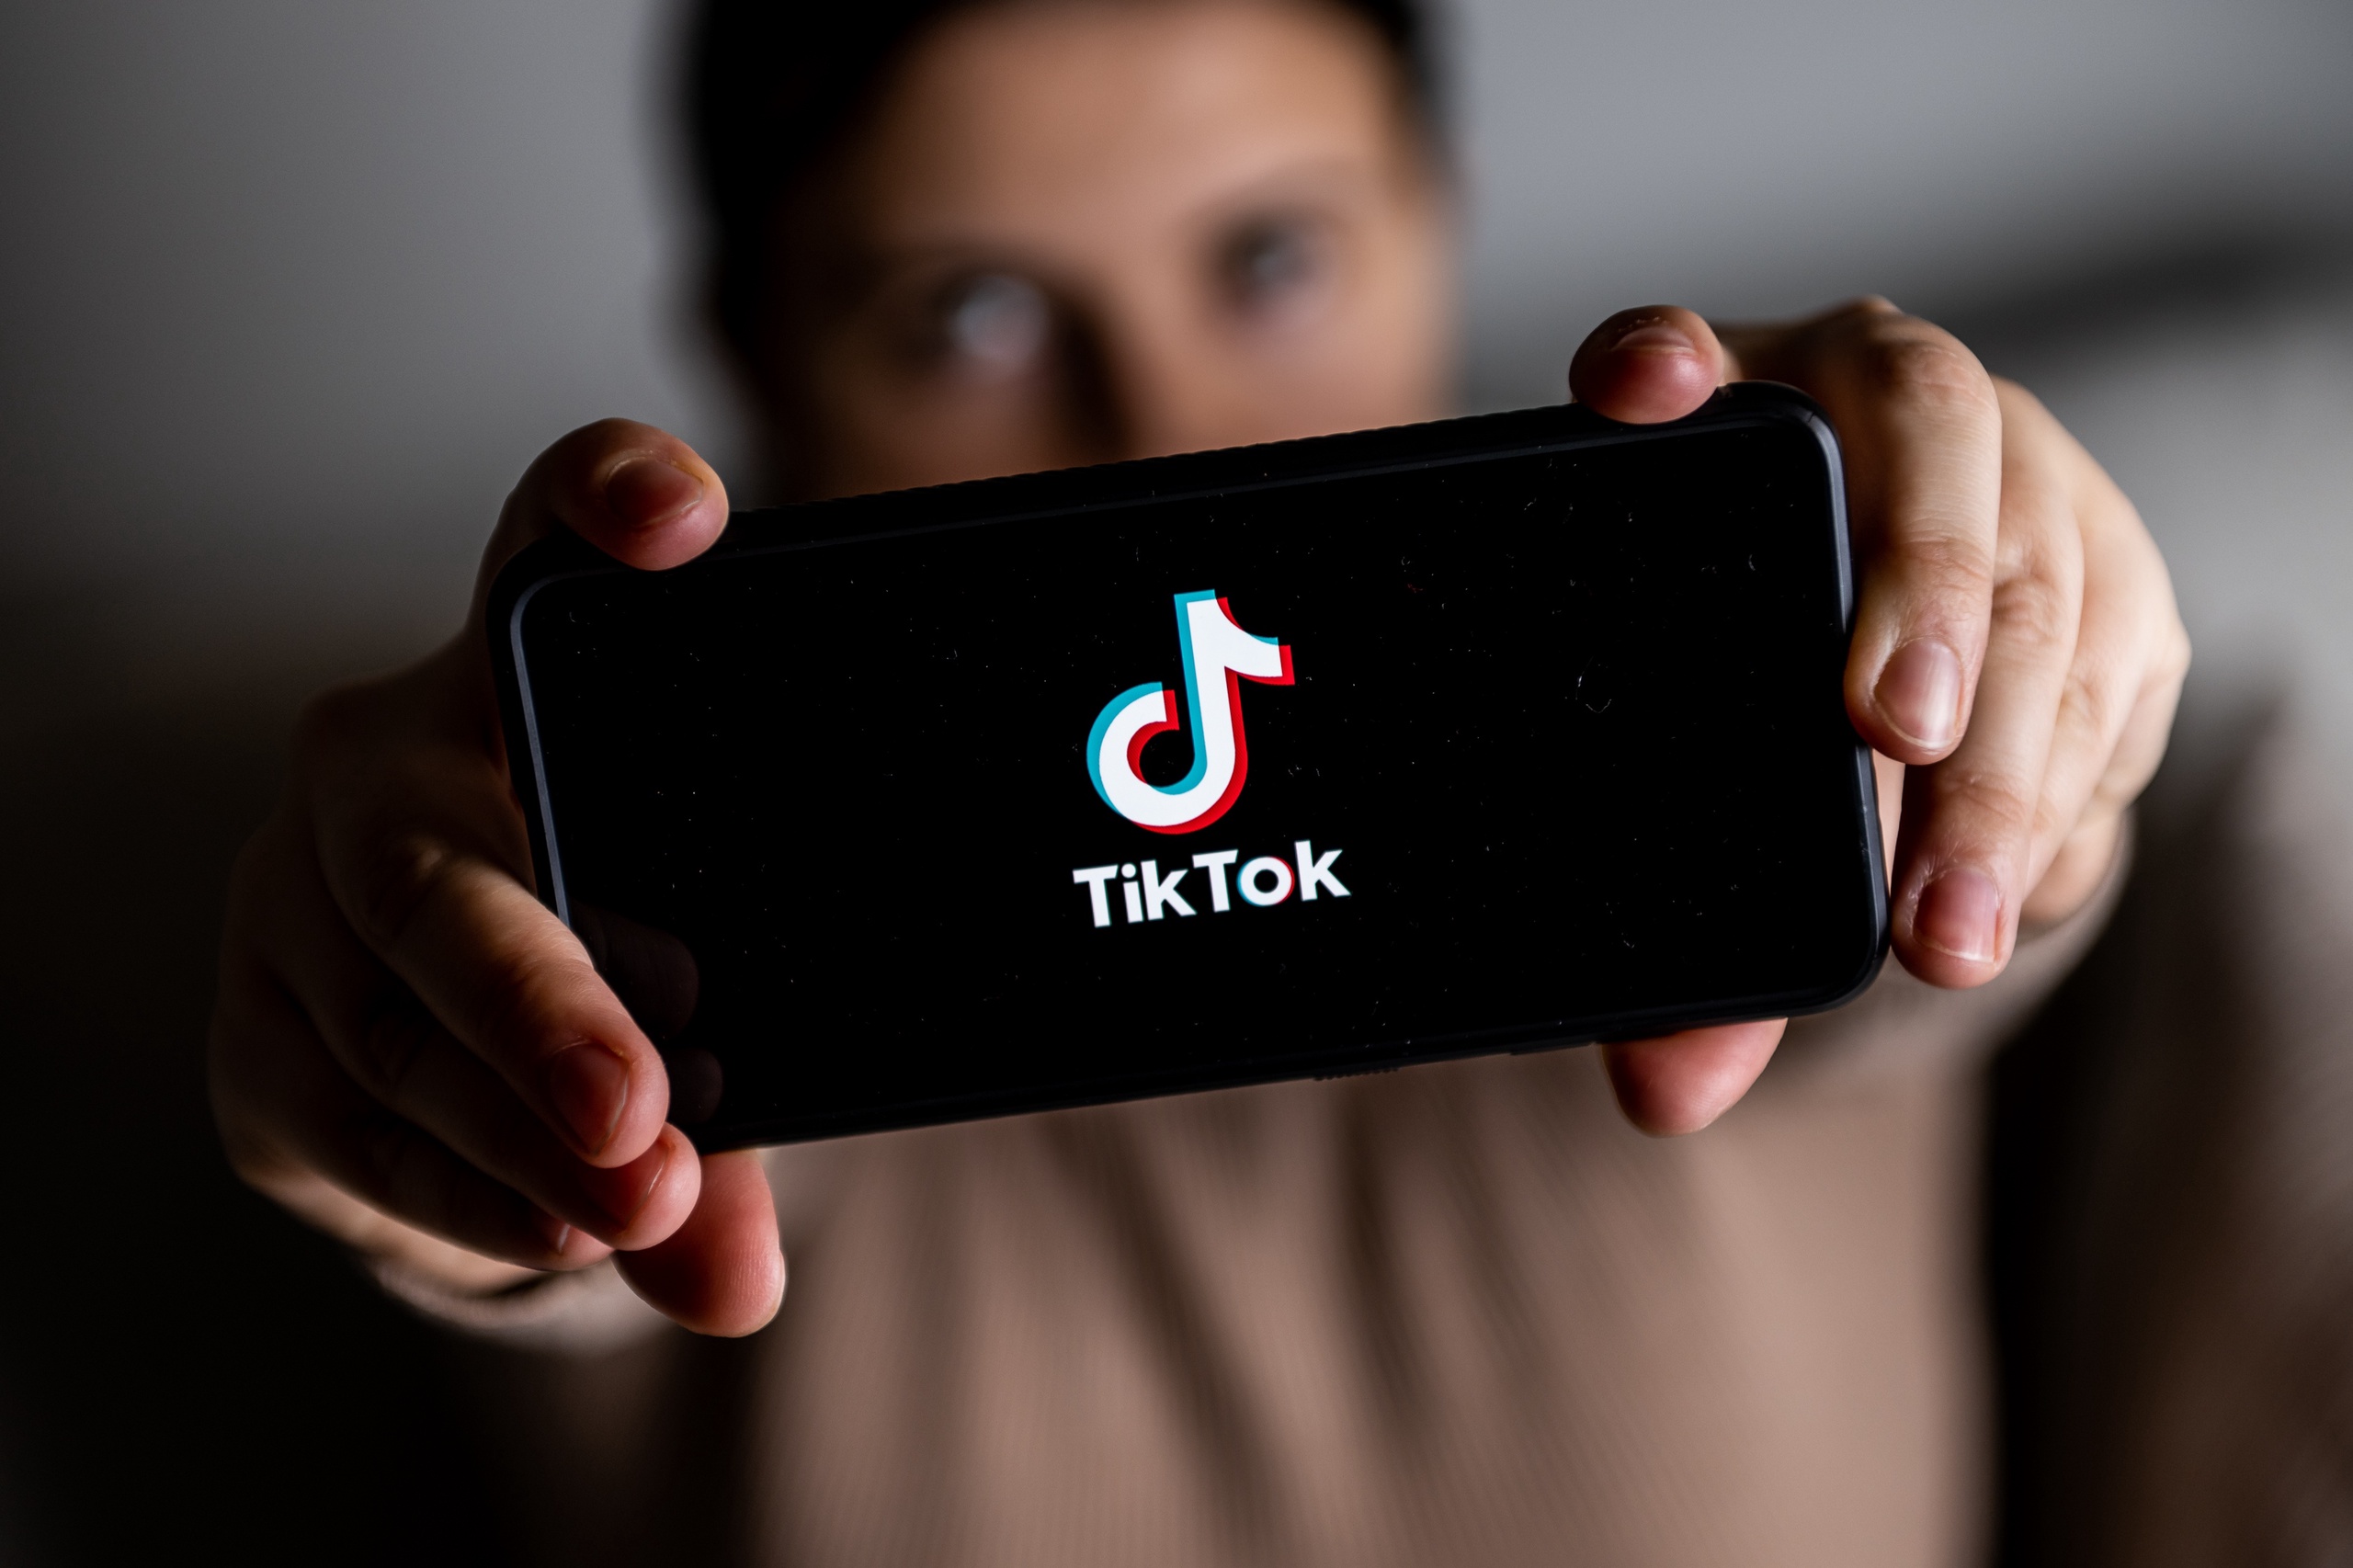 Voor steeds meer overheden komt het social medium TikTok onder een vergrootglas te liggen. De app, vroeger populair voor de dansfilmpjes, maar tegenwoordig ook vanwege de memes en (des)informatie, zou grote risico's met zich meebrengen, zo stellen overheden.